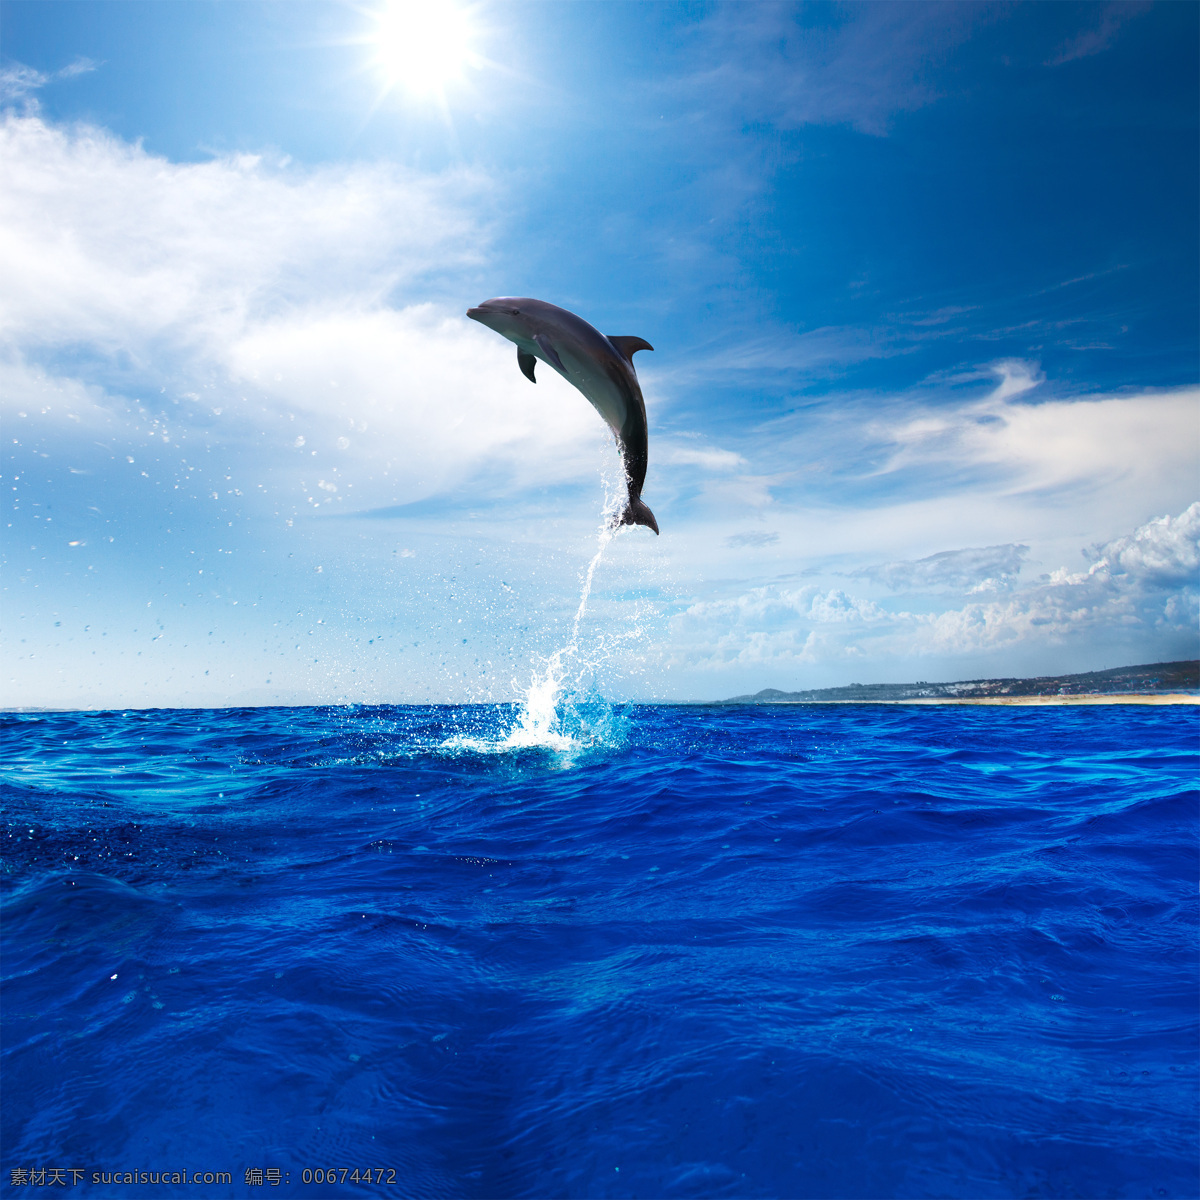 海豚表演 海豚 水下 动物 生活 水底 游泳 野生动物 哺乳动物 自然 海洋 蓝色 野生 阳光 光线 照射 海洋精灵海豚 生物世界 海洋生物